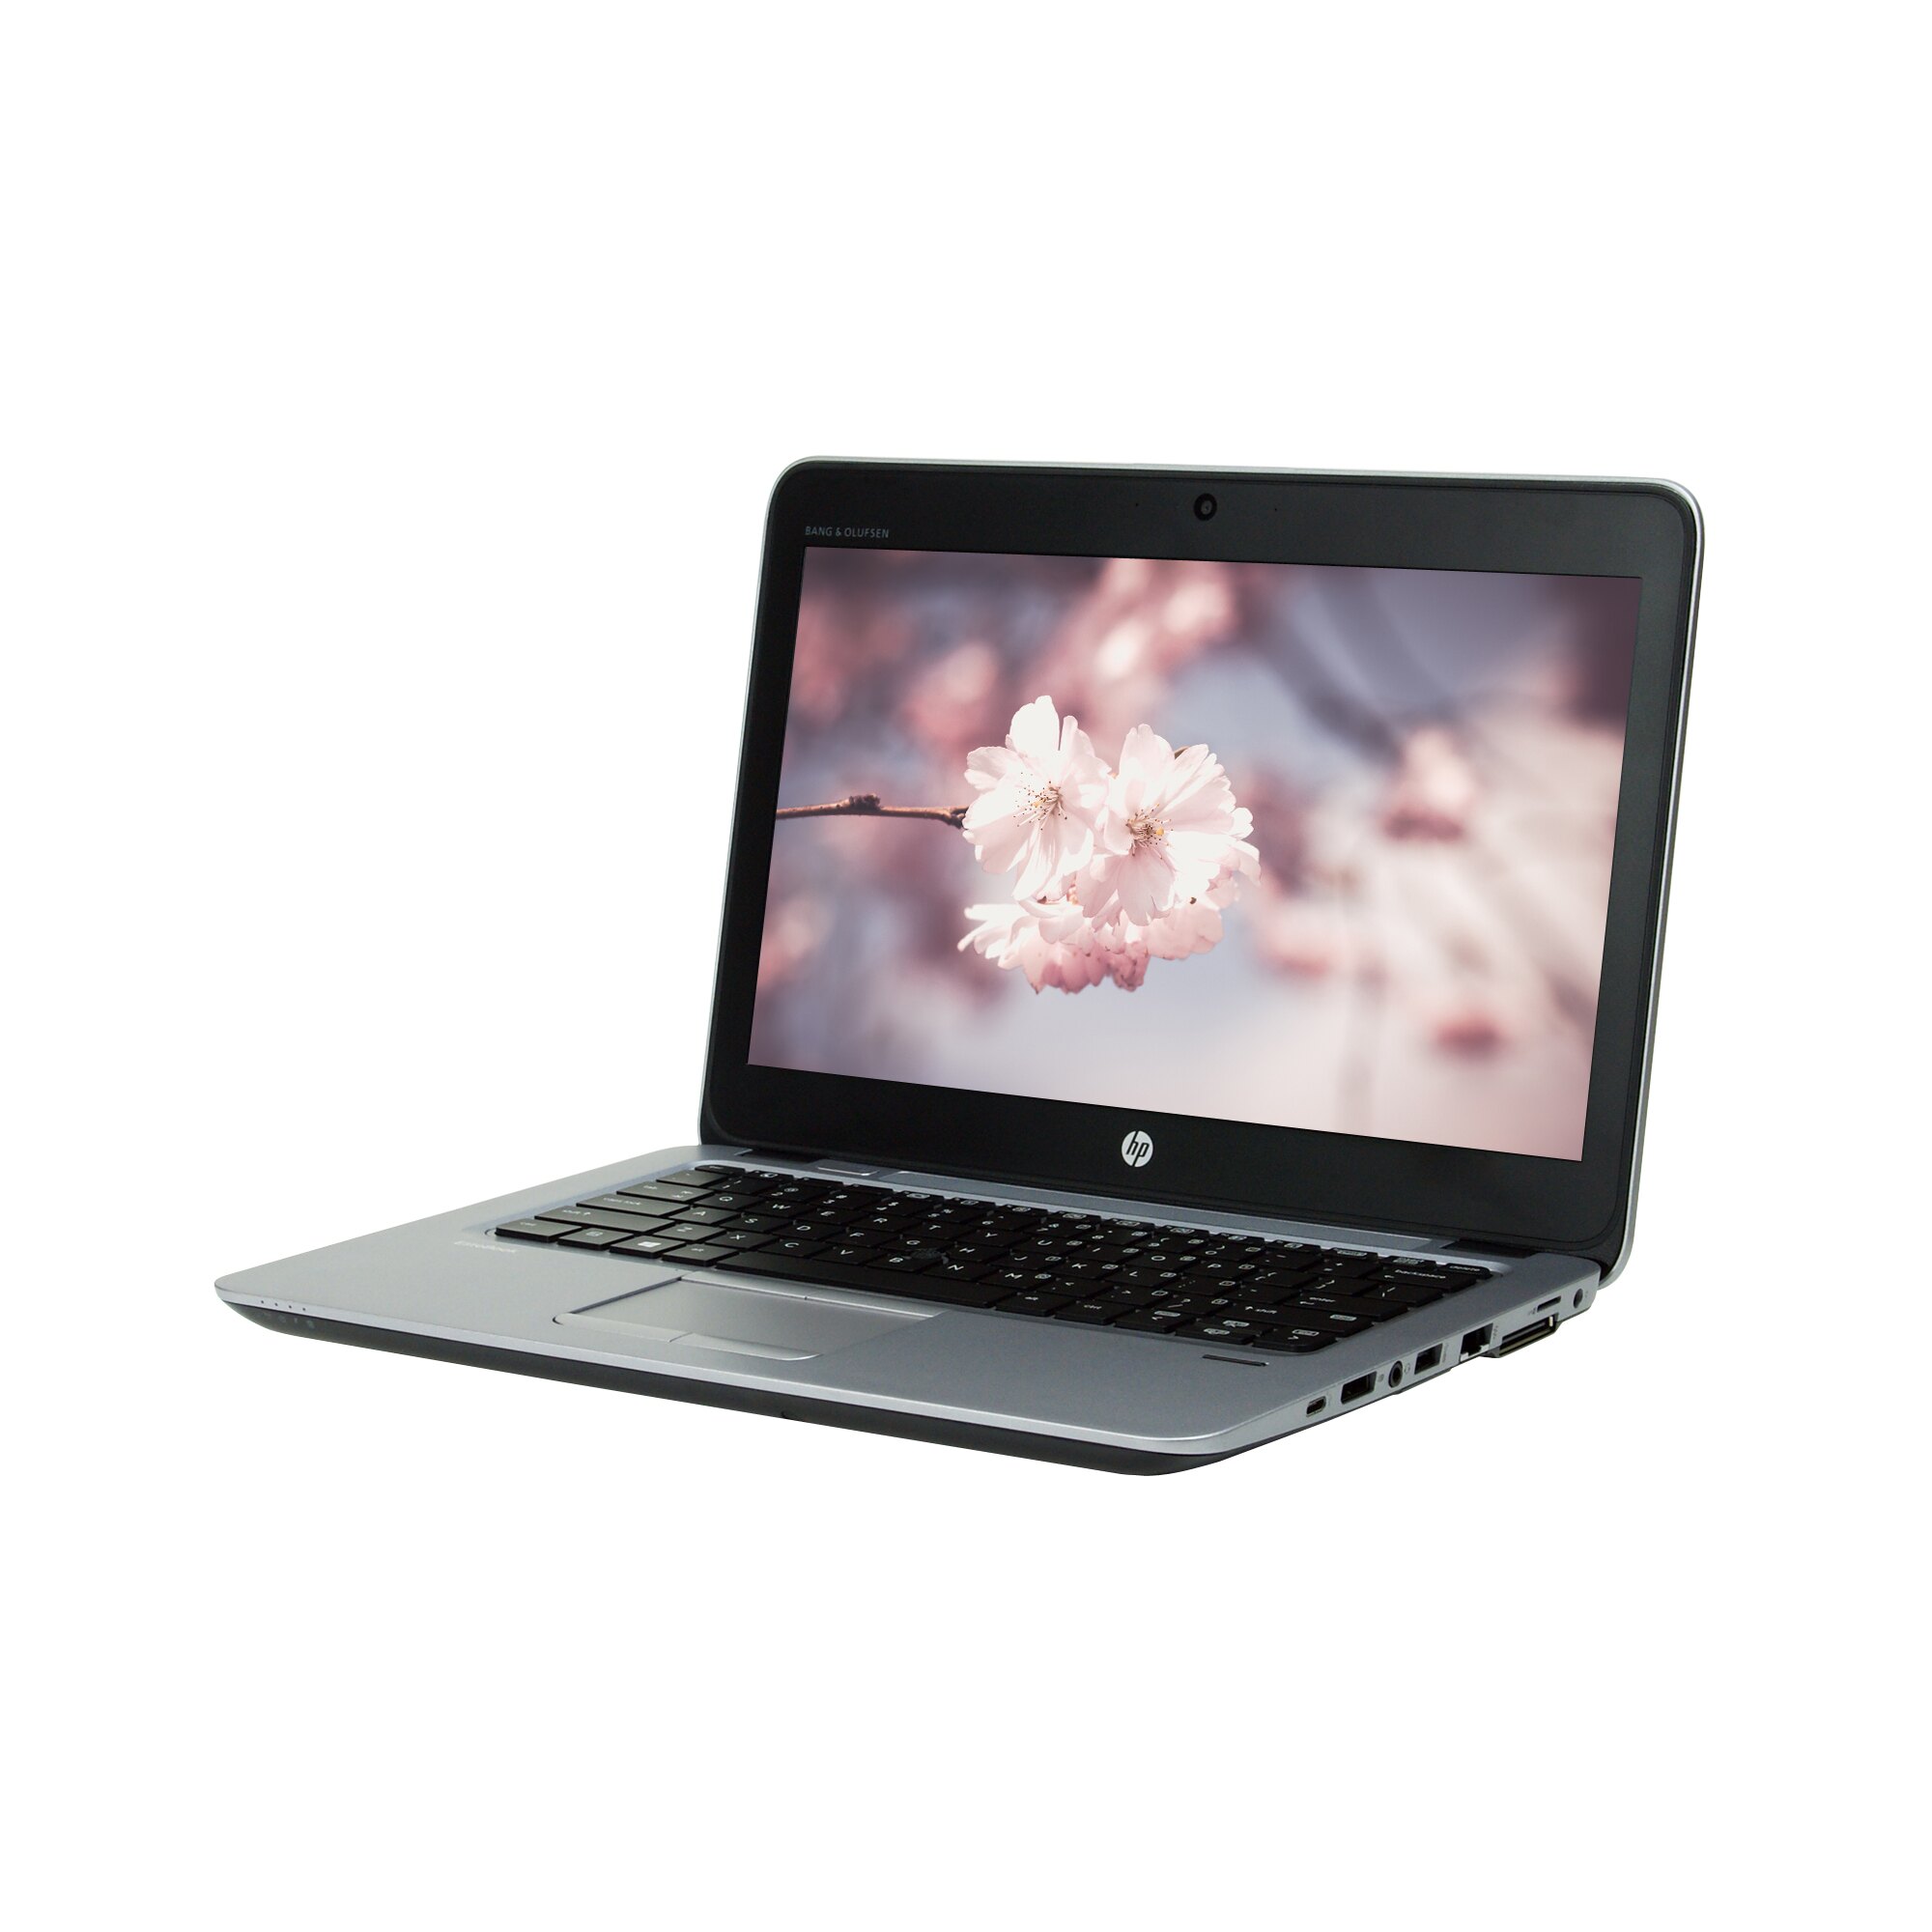 Laptop HP Elitbook 820 g3 -1.jpg